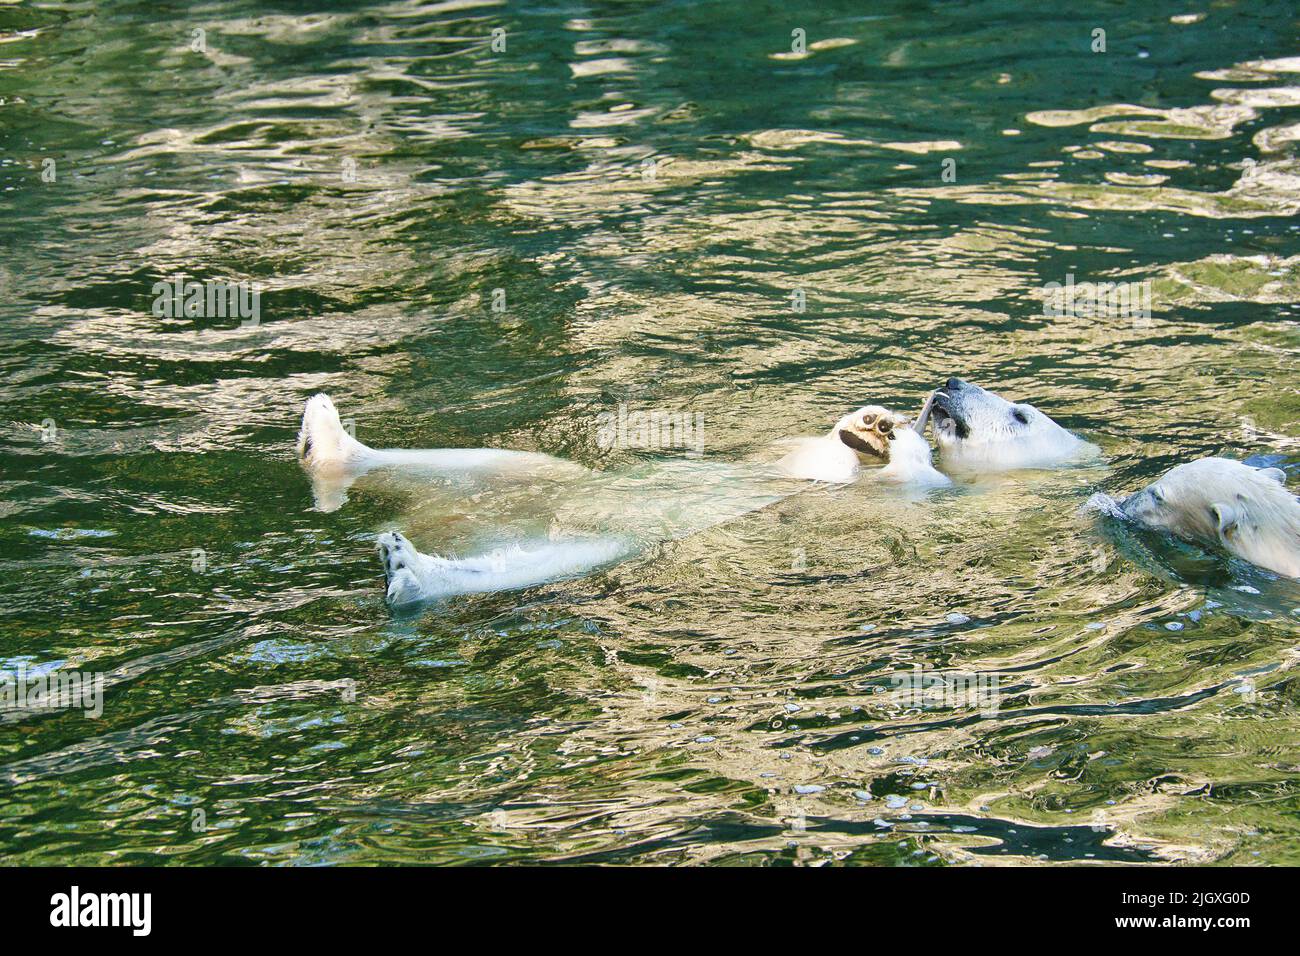 Eisbär schwimmend auf dem Rücken im Wasser. Weißes Fell des großen Raubtieres. Säugetierfoto Stockfoto